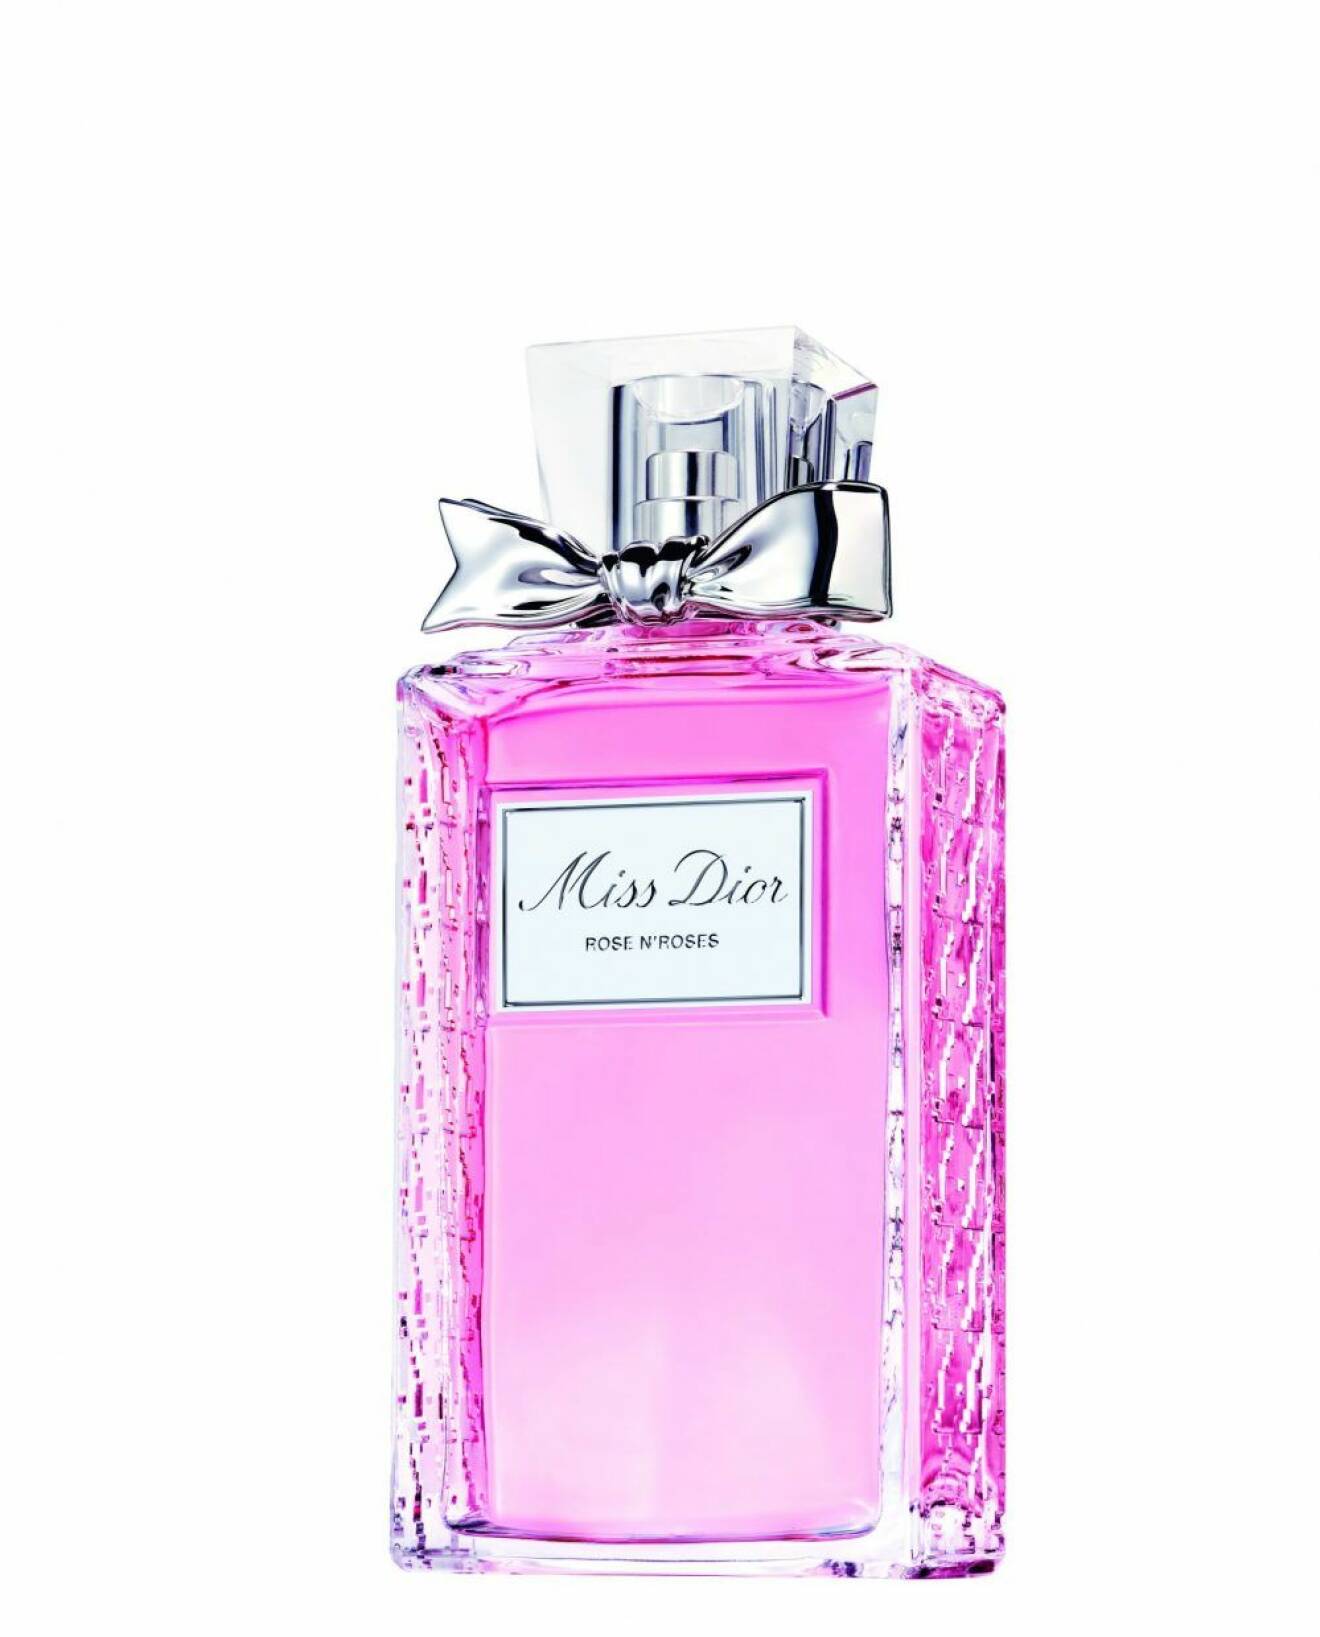 Parfym med doft av ros – Miss Dior Rose n'roses